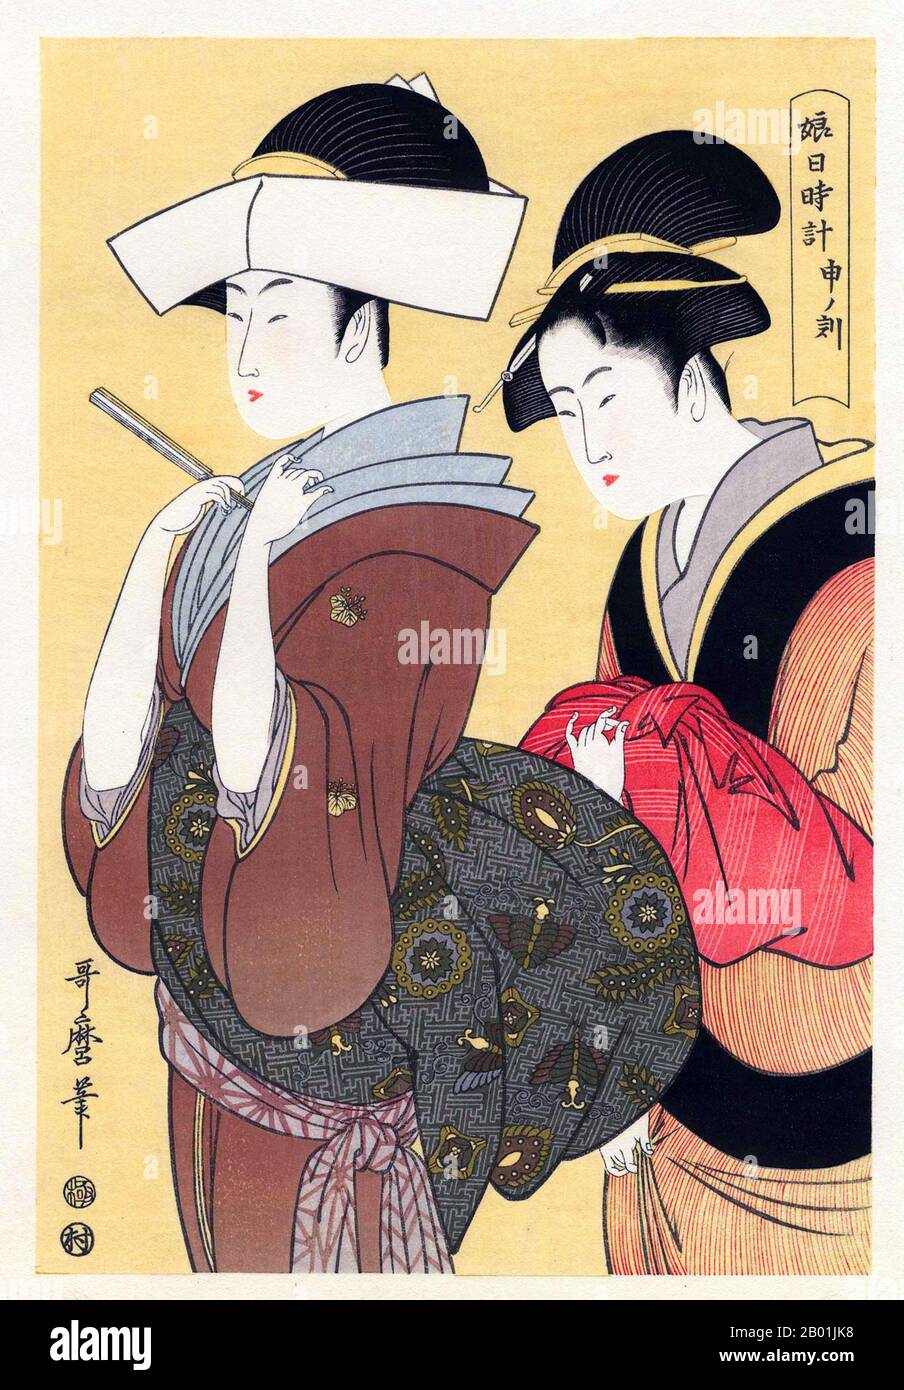 Japan: "Stunde des Affen". Ukiyo-e-Holzblockdruck aus der Serie „Twelve Houses of the Green Houses“ von Kitagawa Utamaro (ca. 1753. Bis 31. Oktober 1806), 1794. Kitagawa Utamaro war ein japanischer Druckmacher und Maler, der als einer der größten Künstler von Holzblockdrucken gilt (Ukiyo-e). Er ist vor allem bekannt für seine meisterhaft zusammengestellten Studien über Frauen, bekannt als Bijinga. Er produzierte auch Naturstudien, insbesondere illustrierte Bücher über Insekten. Stockfoto